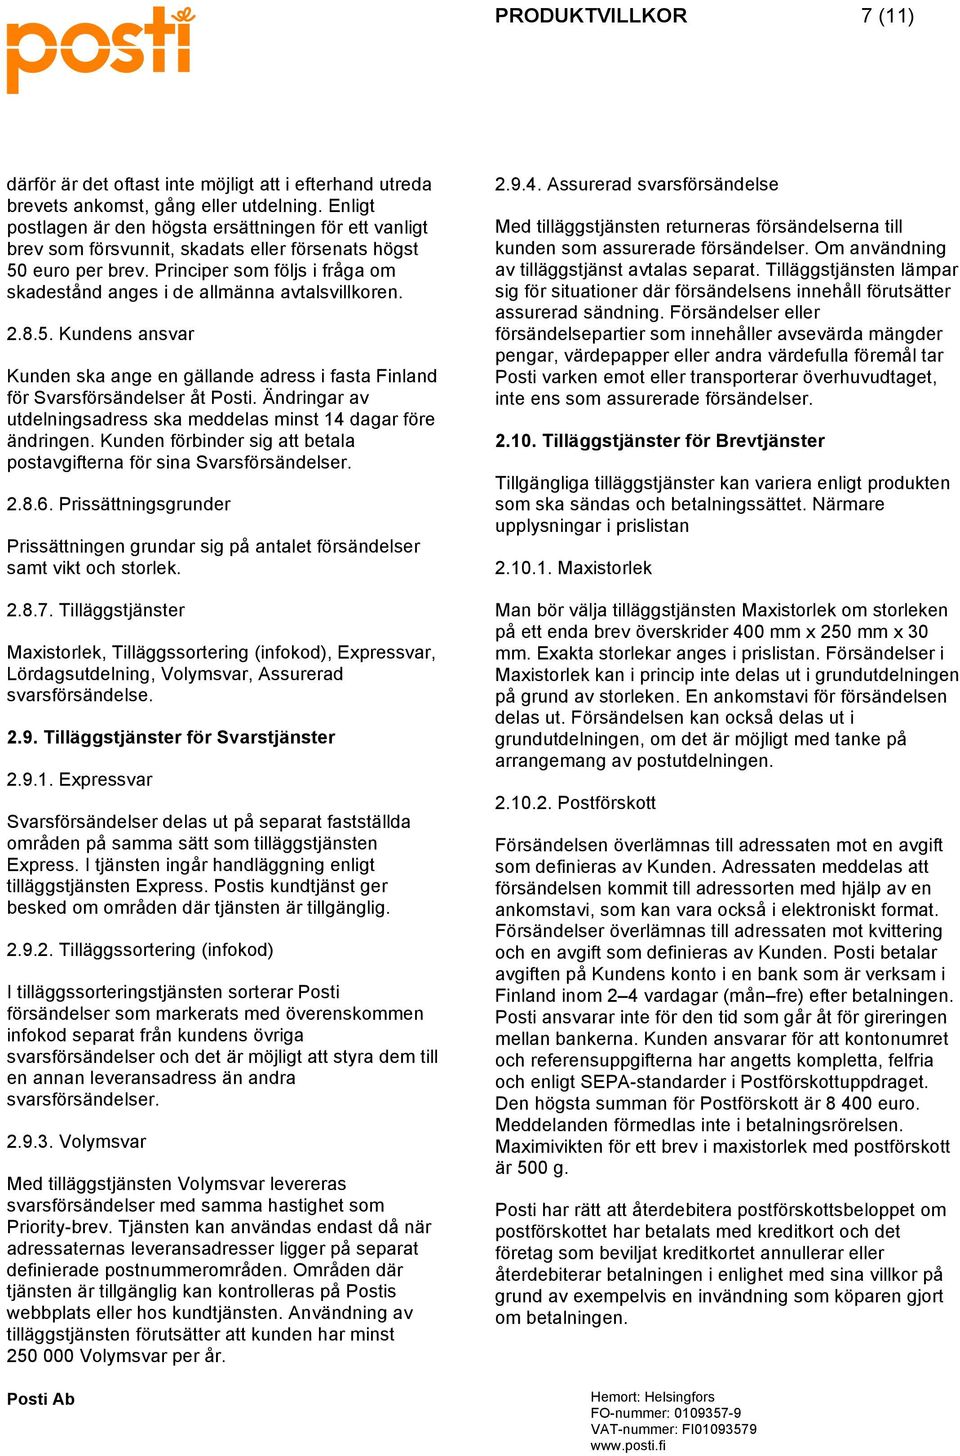 Principer som följs i fråga om skadestånd anges i de allmänna avtalsvillkoren. 2.8.5. Kundens ansvar Kunden ska ange en gällande adress i fasta Finland för Svarsförsändelser åt Posti.